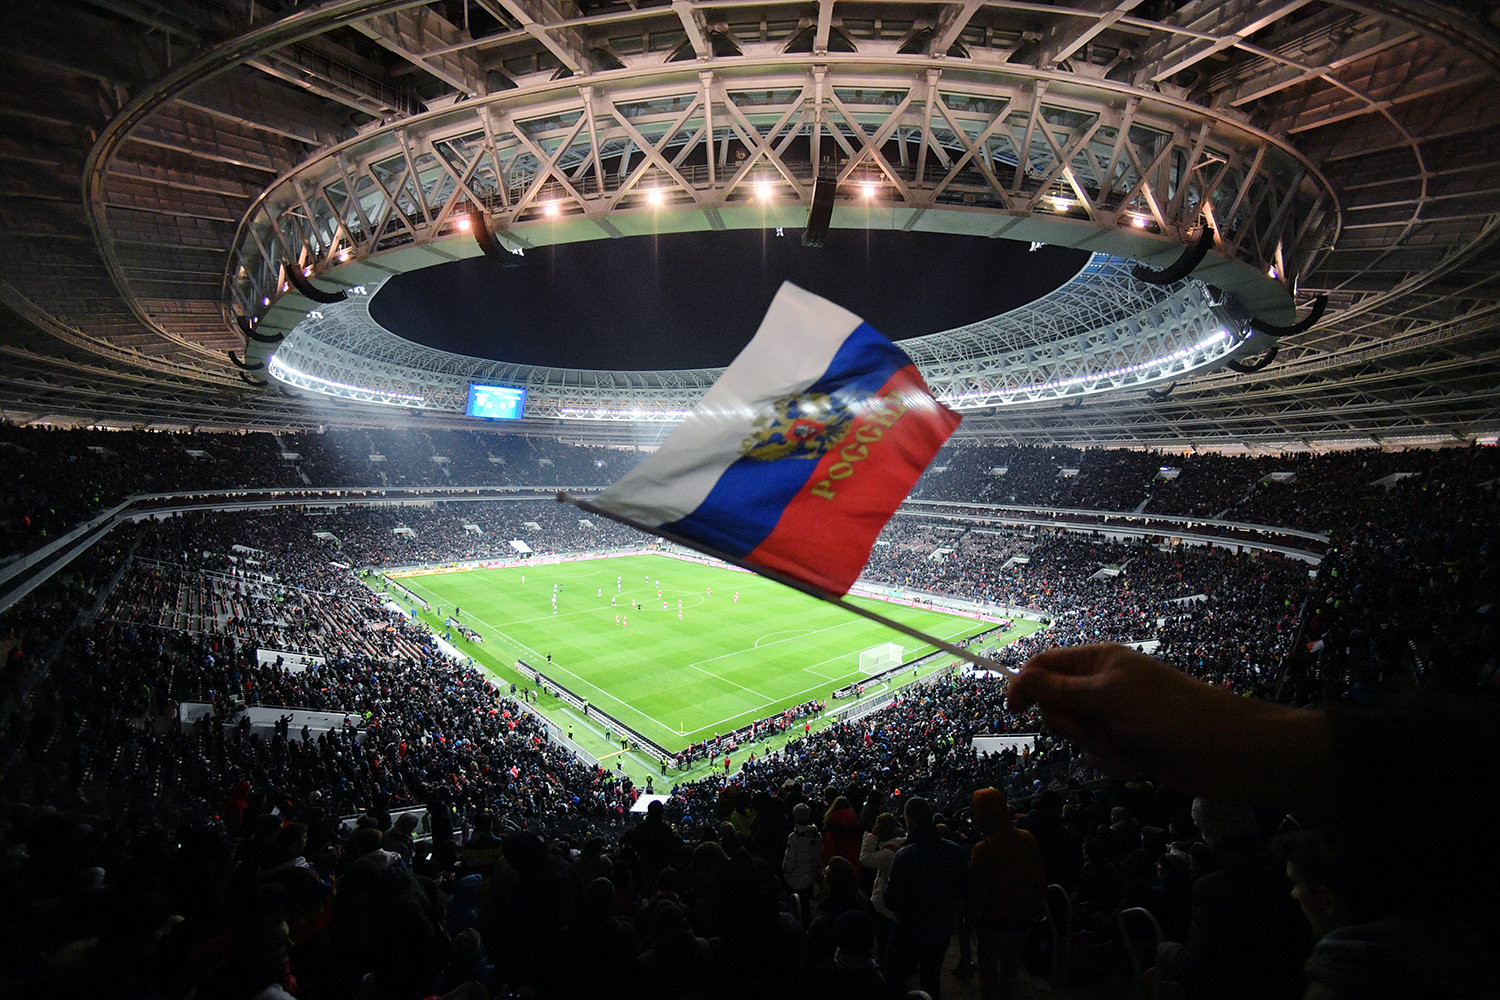 Sân vận động Luzhniki tại Moscow, nơi diễn ra đêm khai mạc World Cup 2018